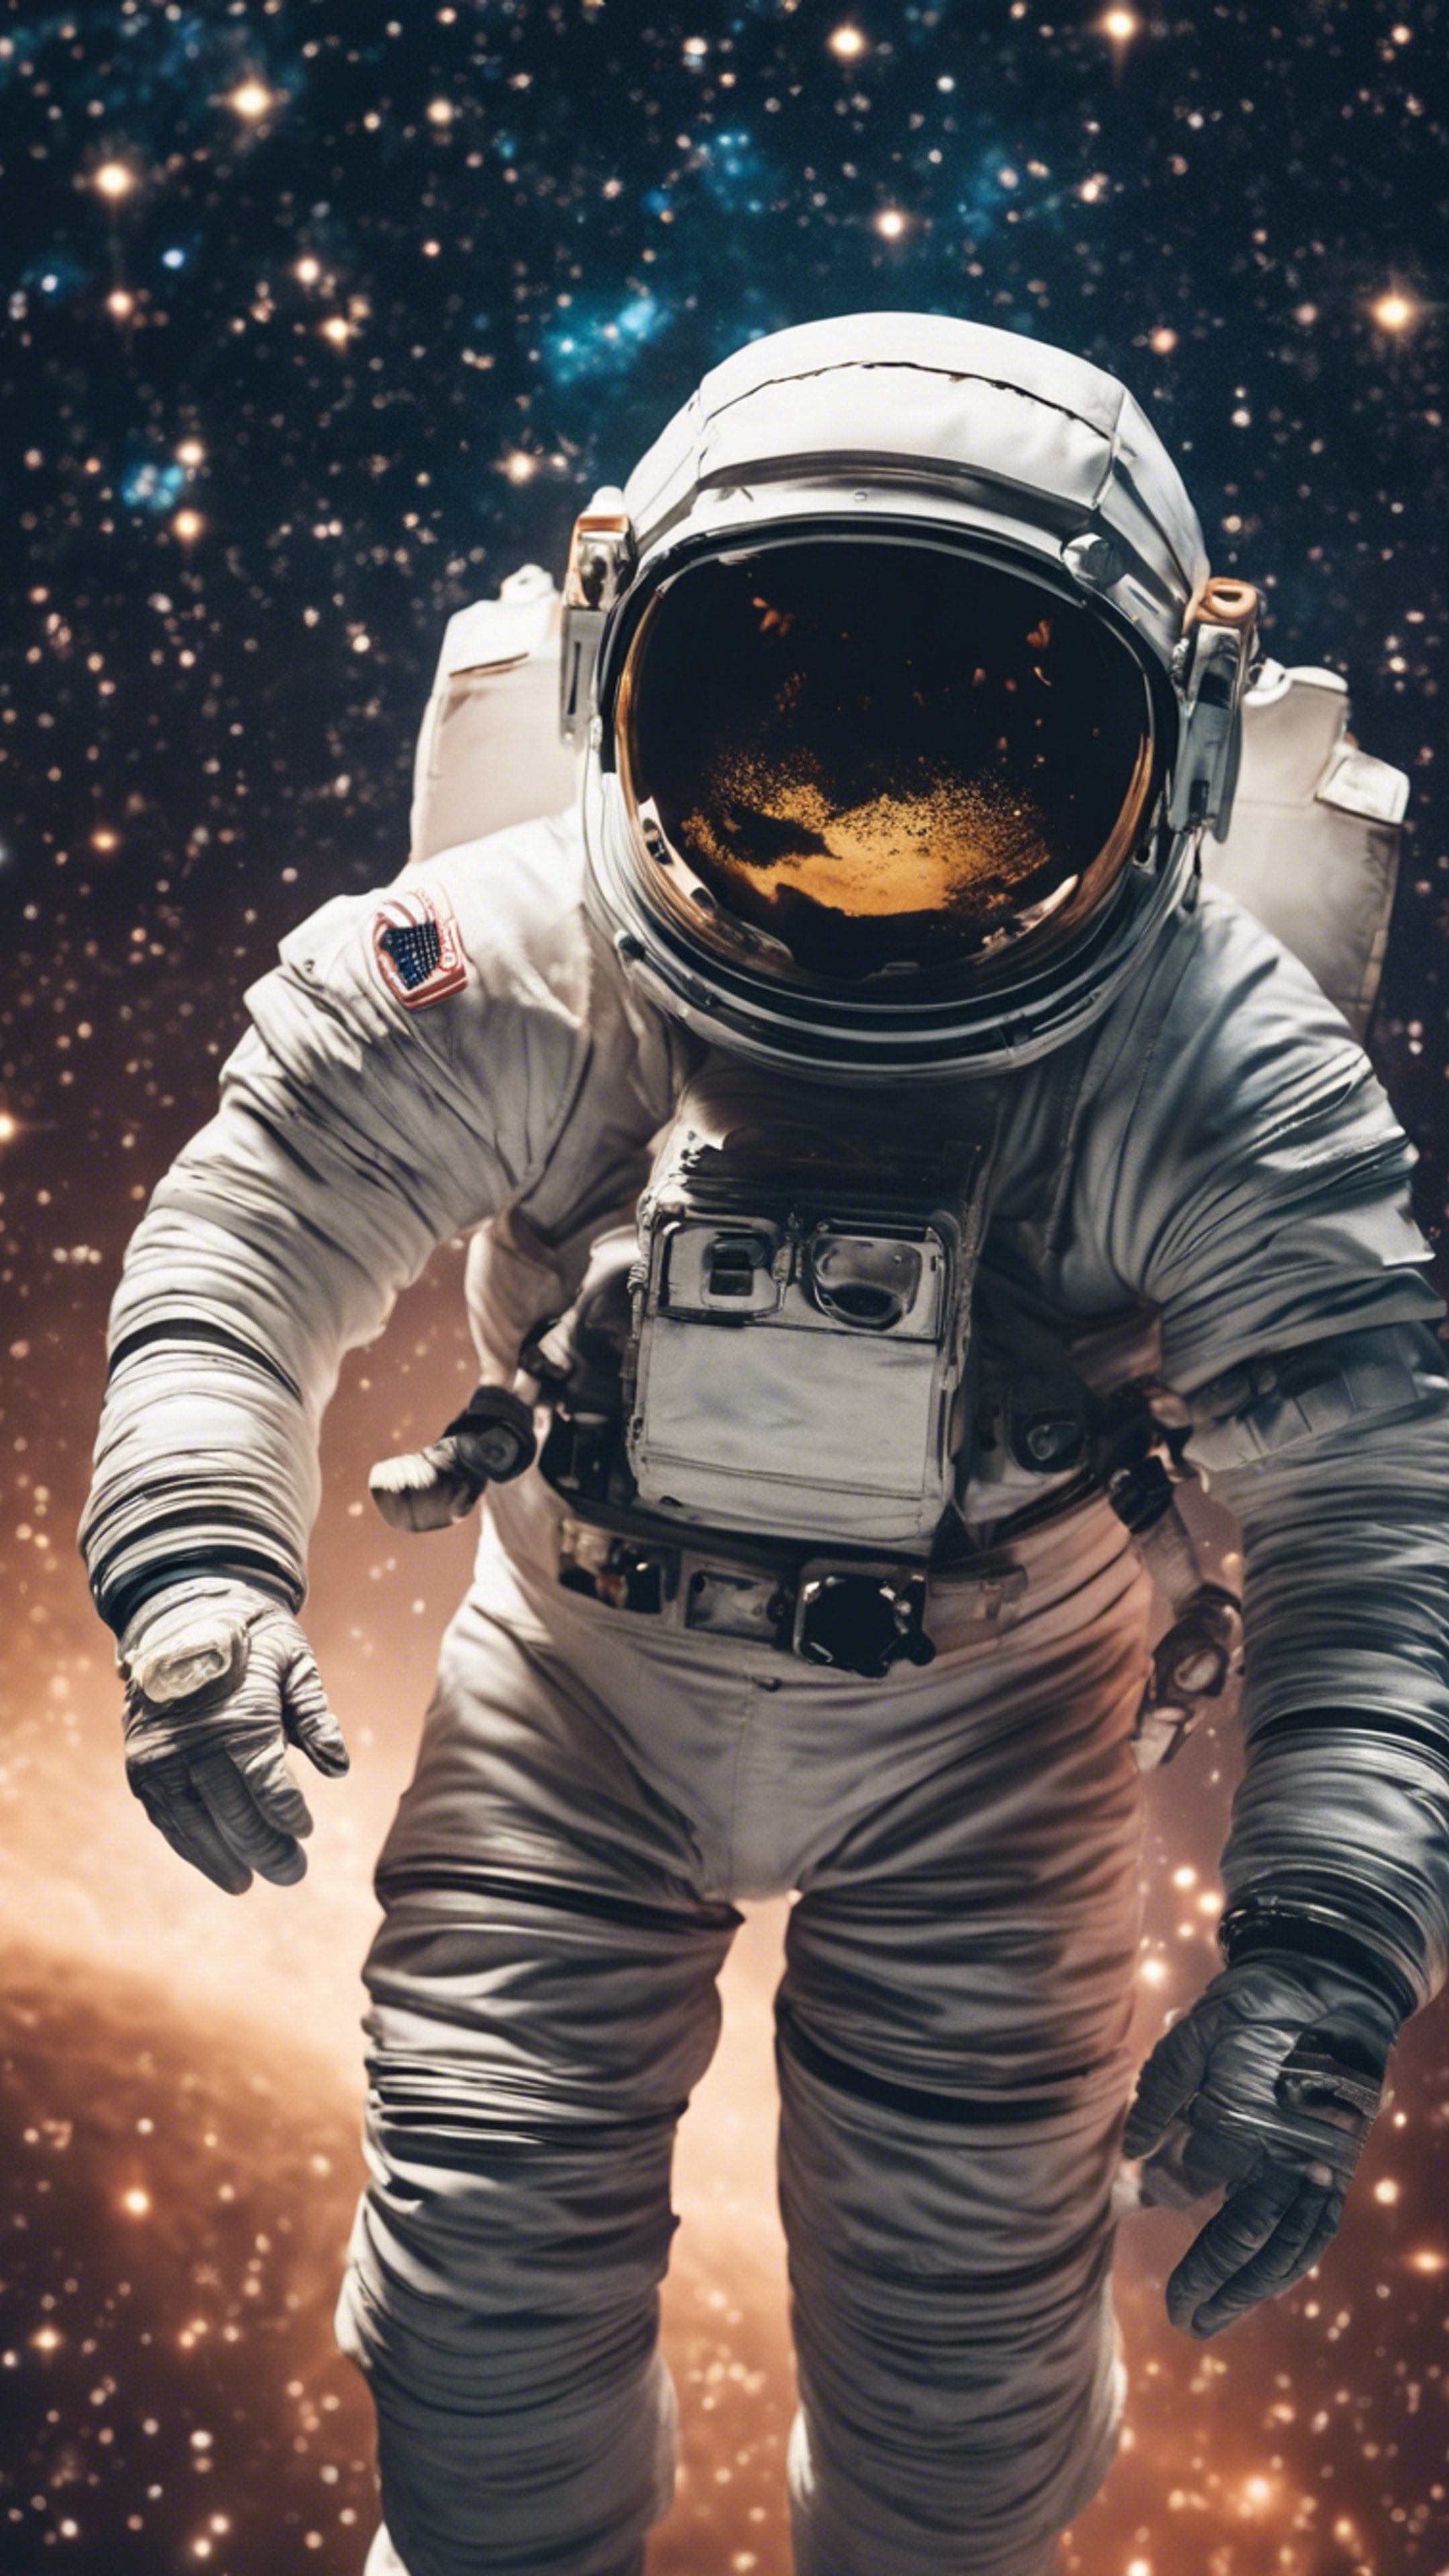 An astronaut floating in space surrounded by billions of stars. duvar kağıdı[e49b7575417f479bbe28]